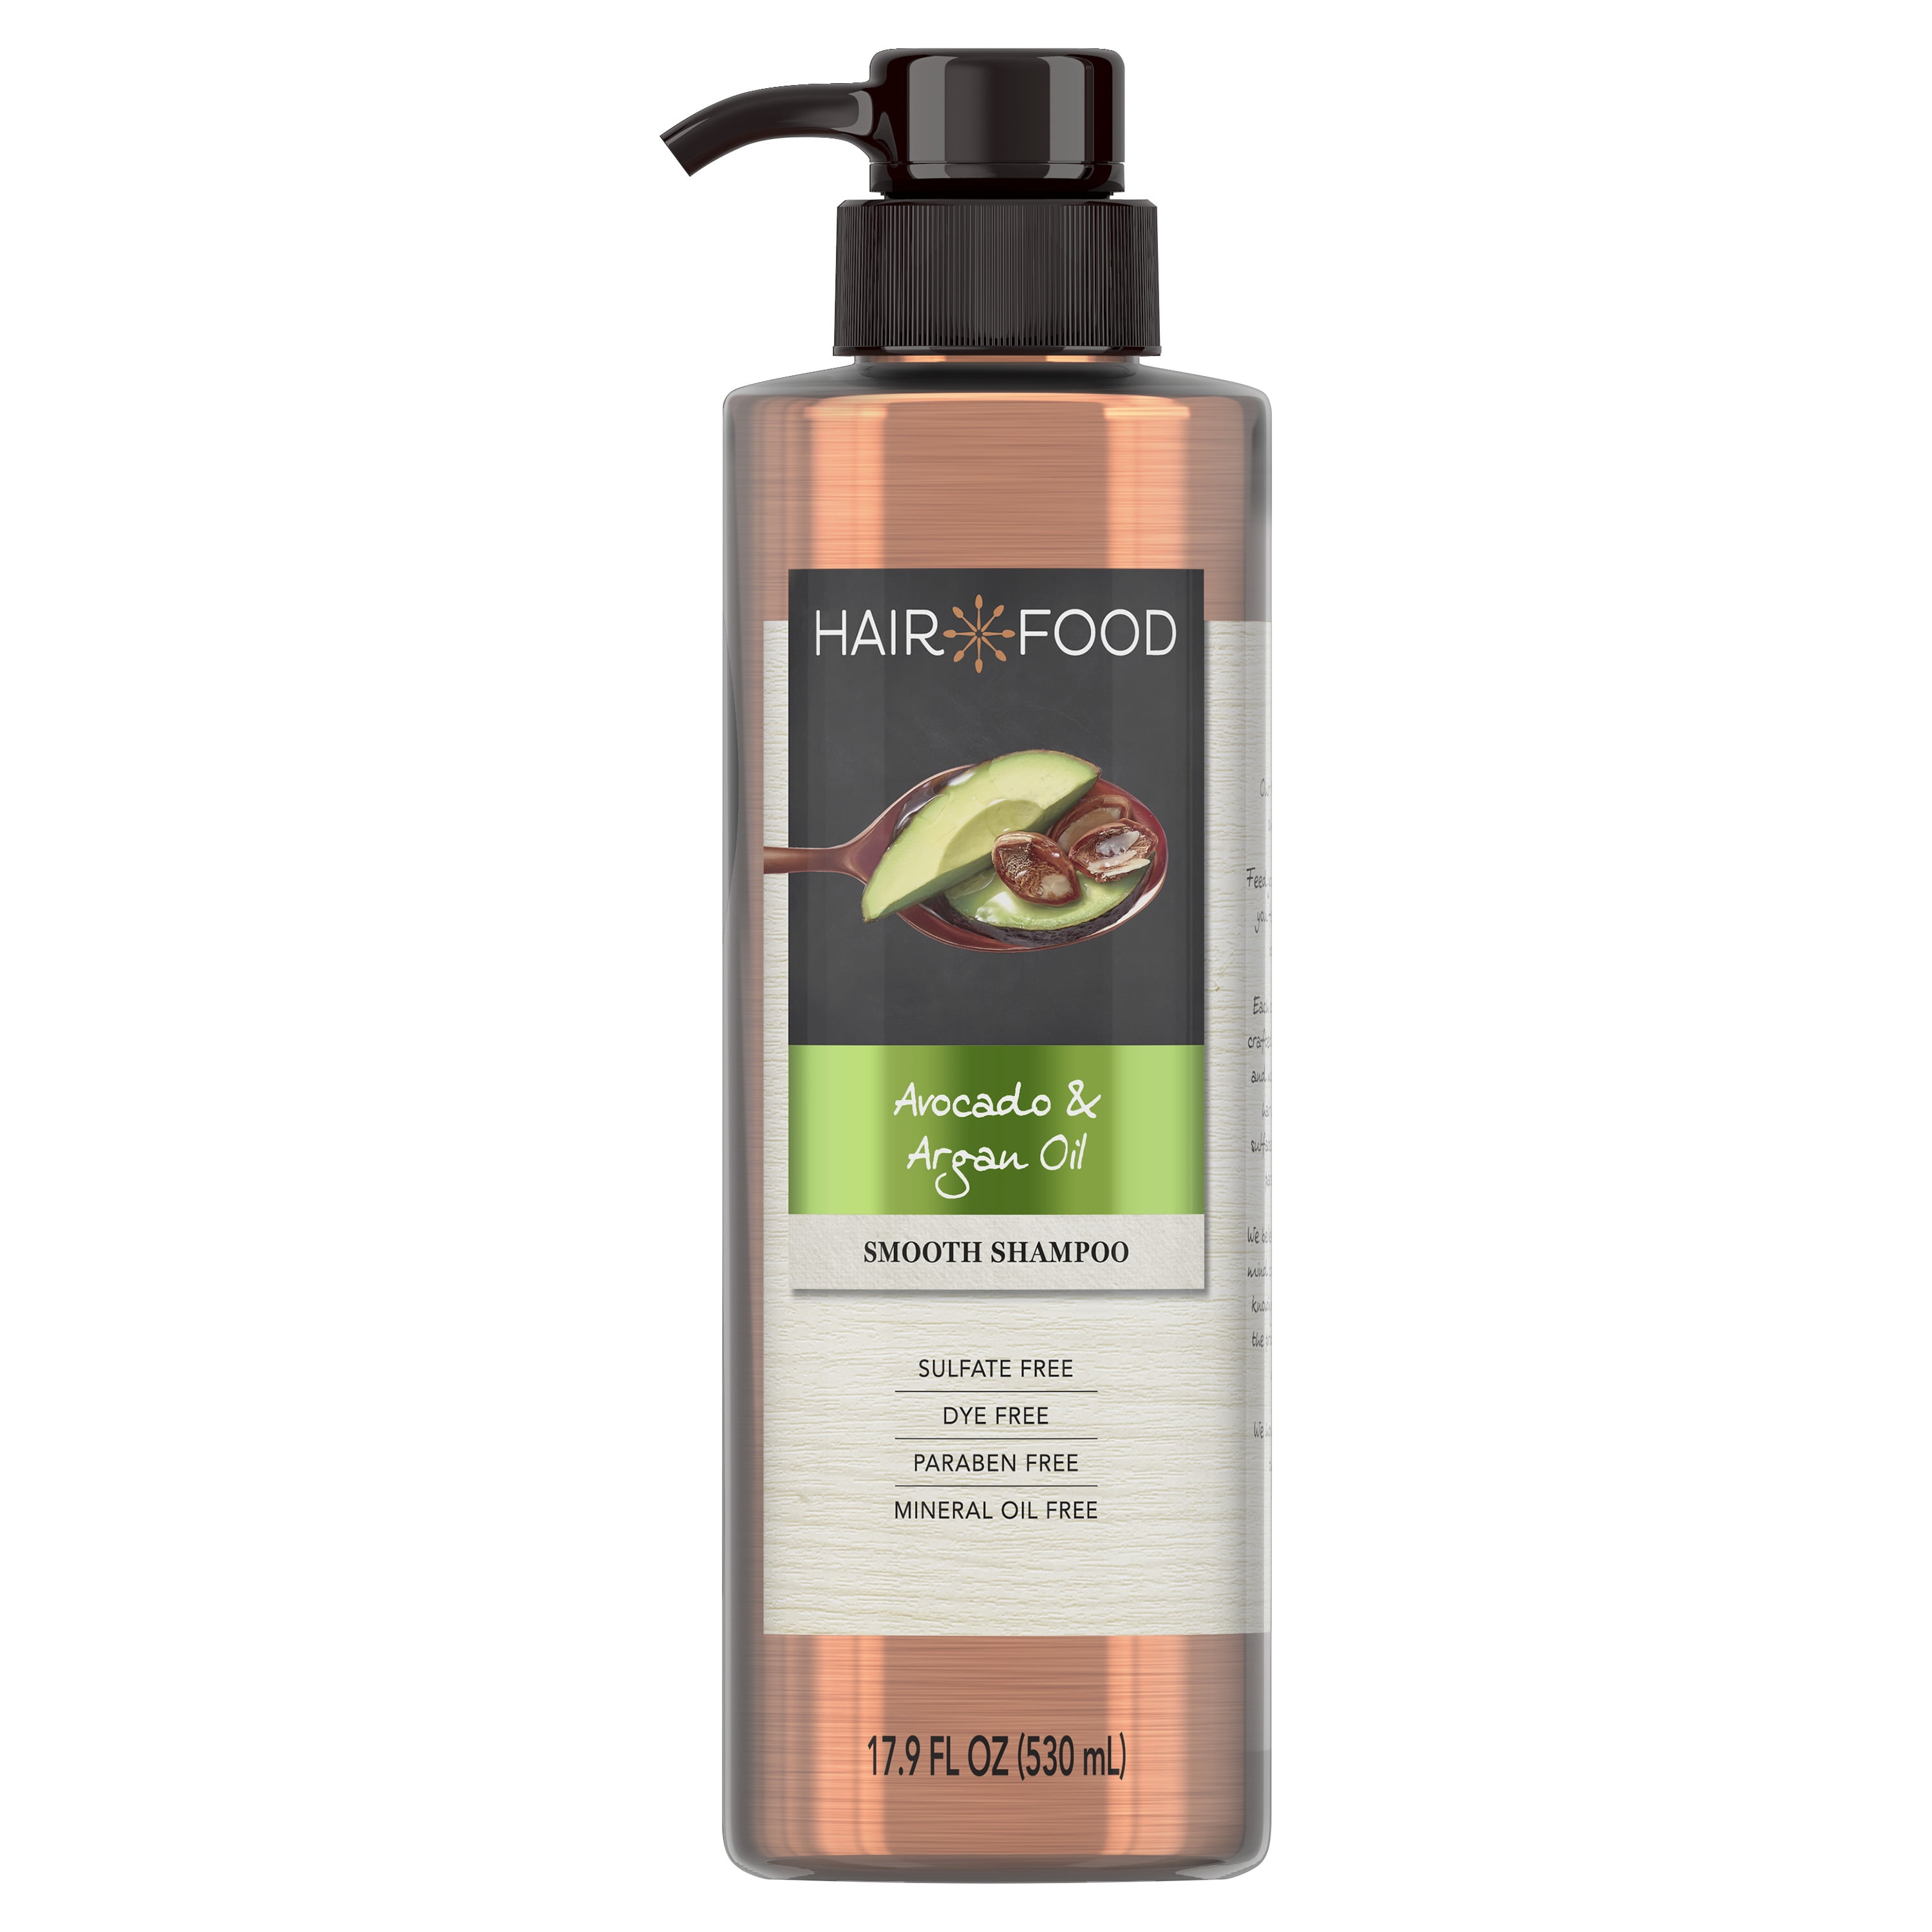 Hair Food Avocado & Argan Oil Sulfate Free Shampoo, 17.9 fl oz, Dye